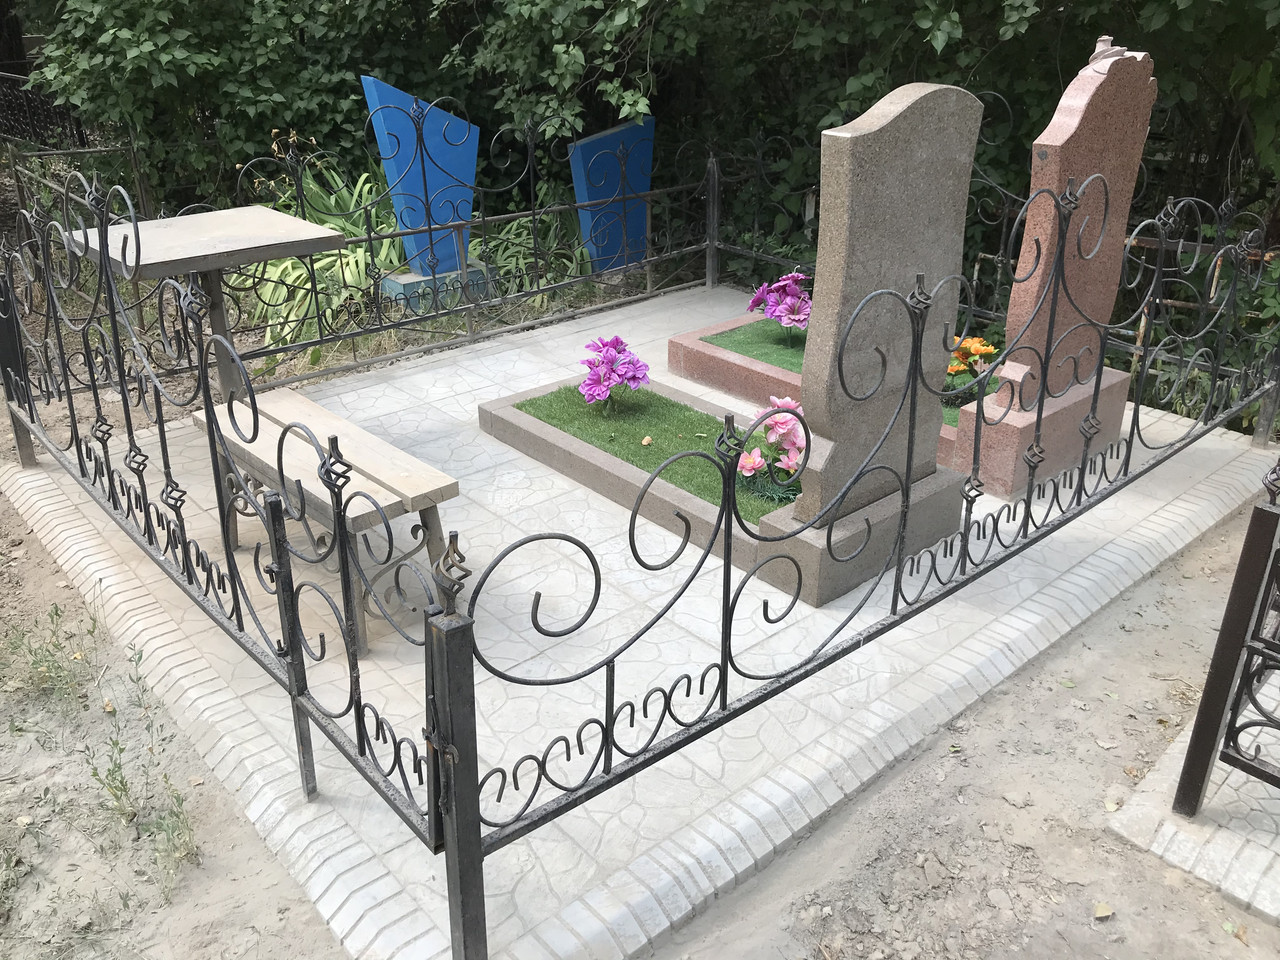 Благоустройство могилы на кладбище